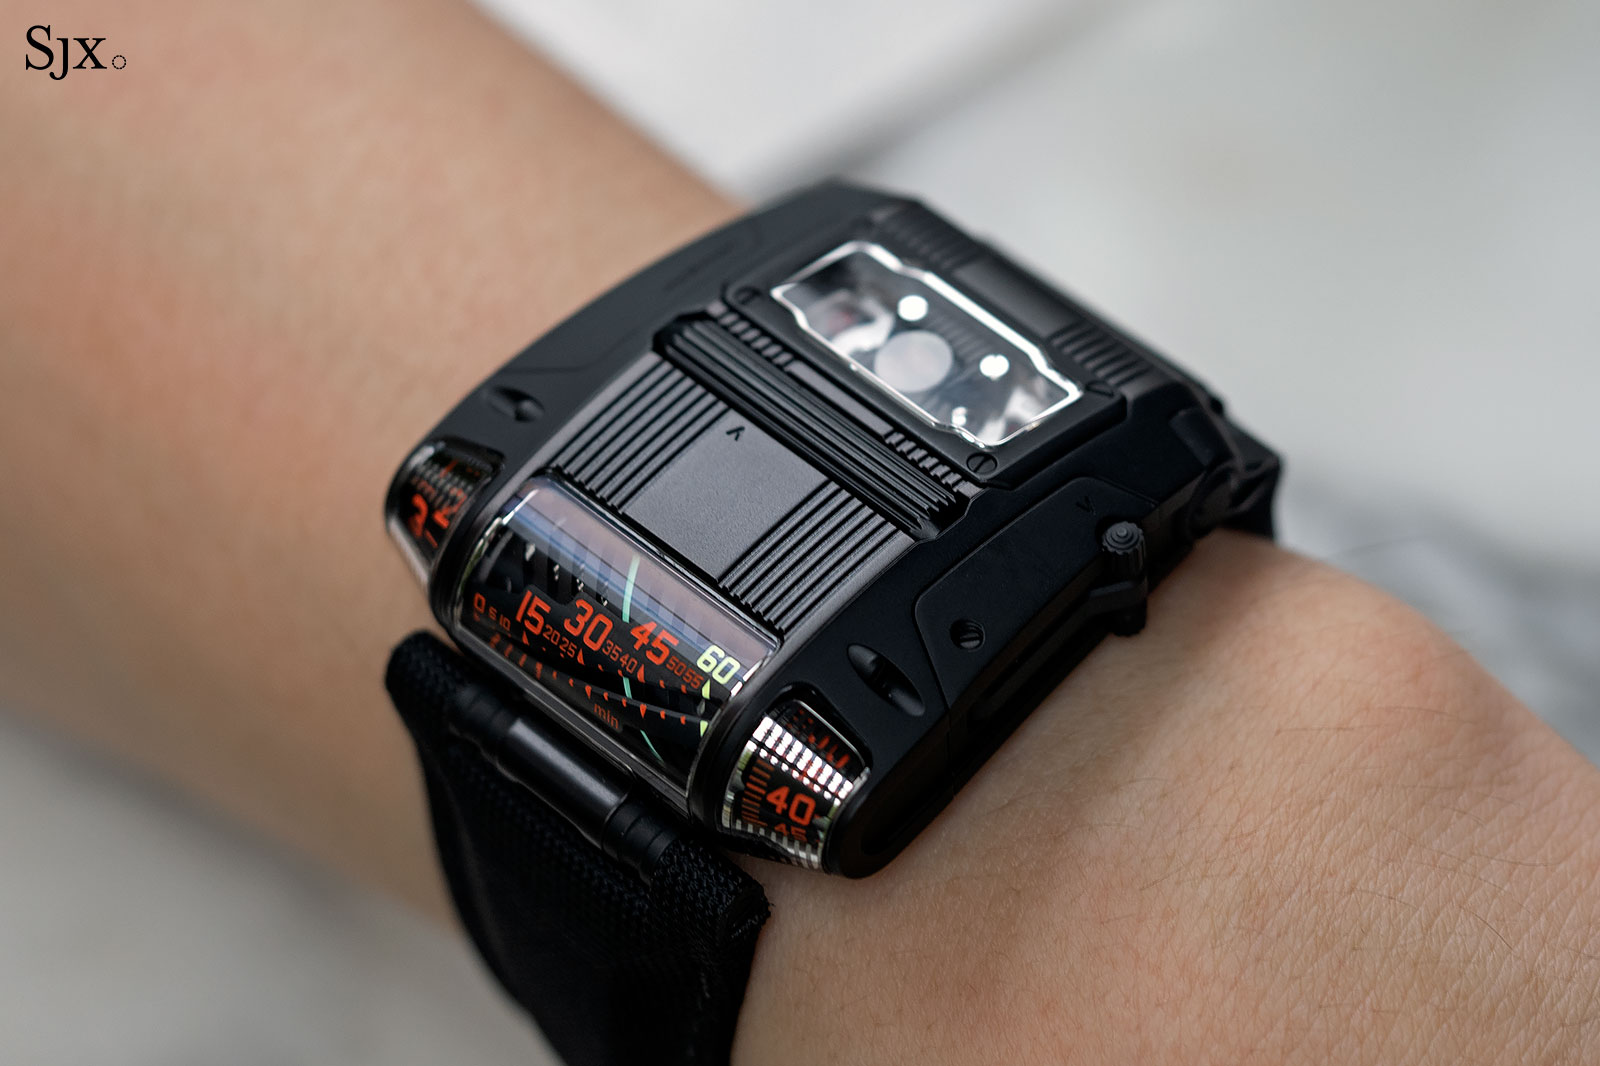 Auction Watch: Robert Downey Jr.’s Very Own Urwerk UR-105 | SJX Watches